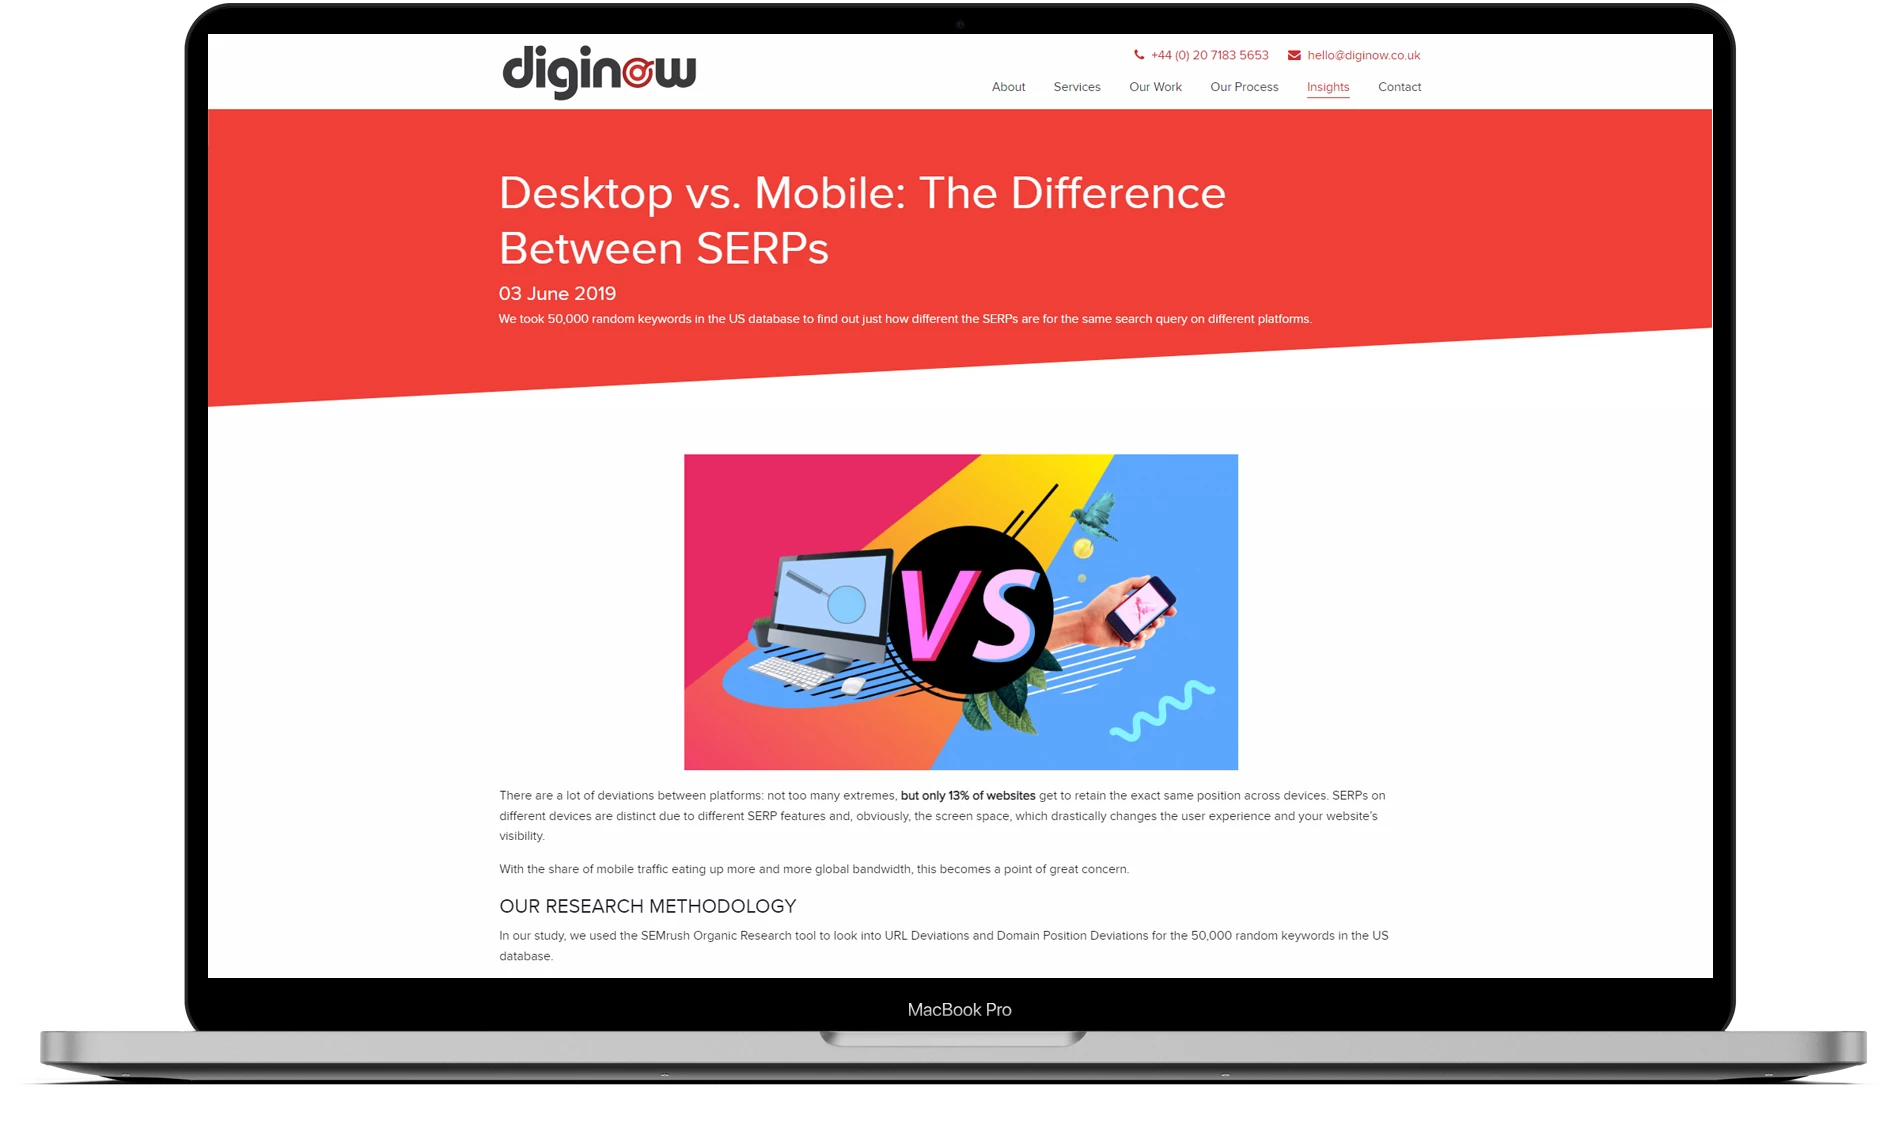 Diginow website